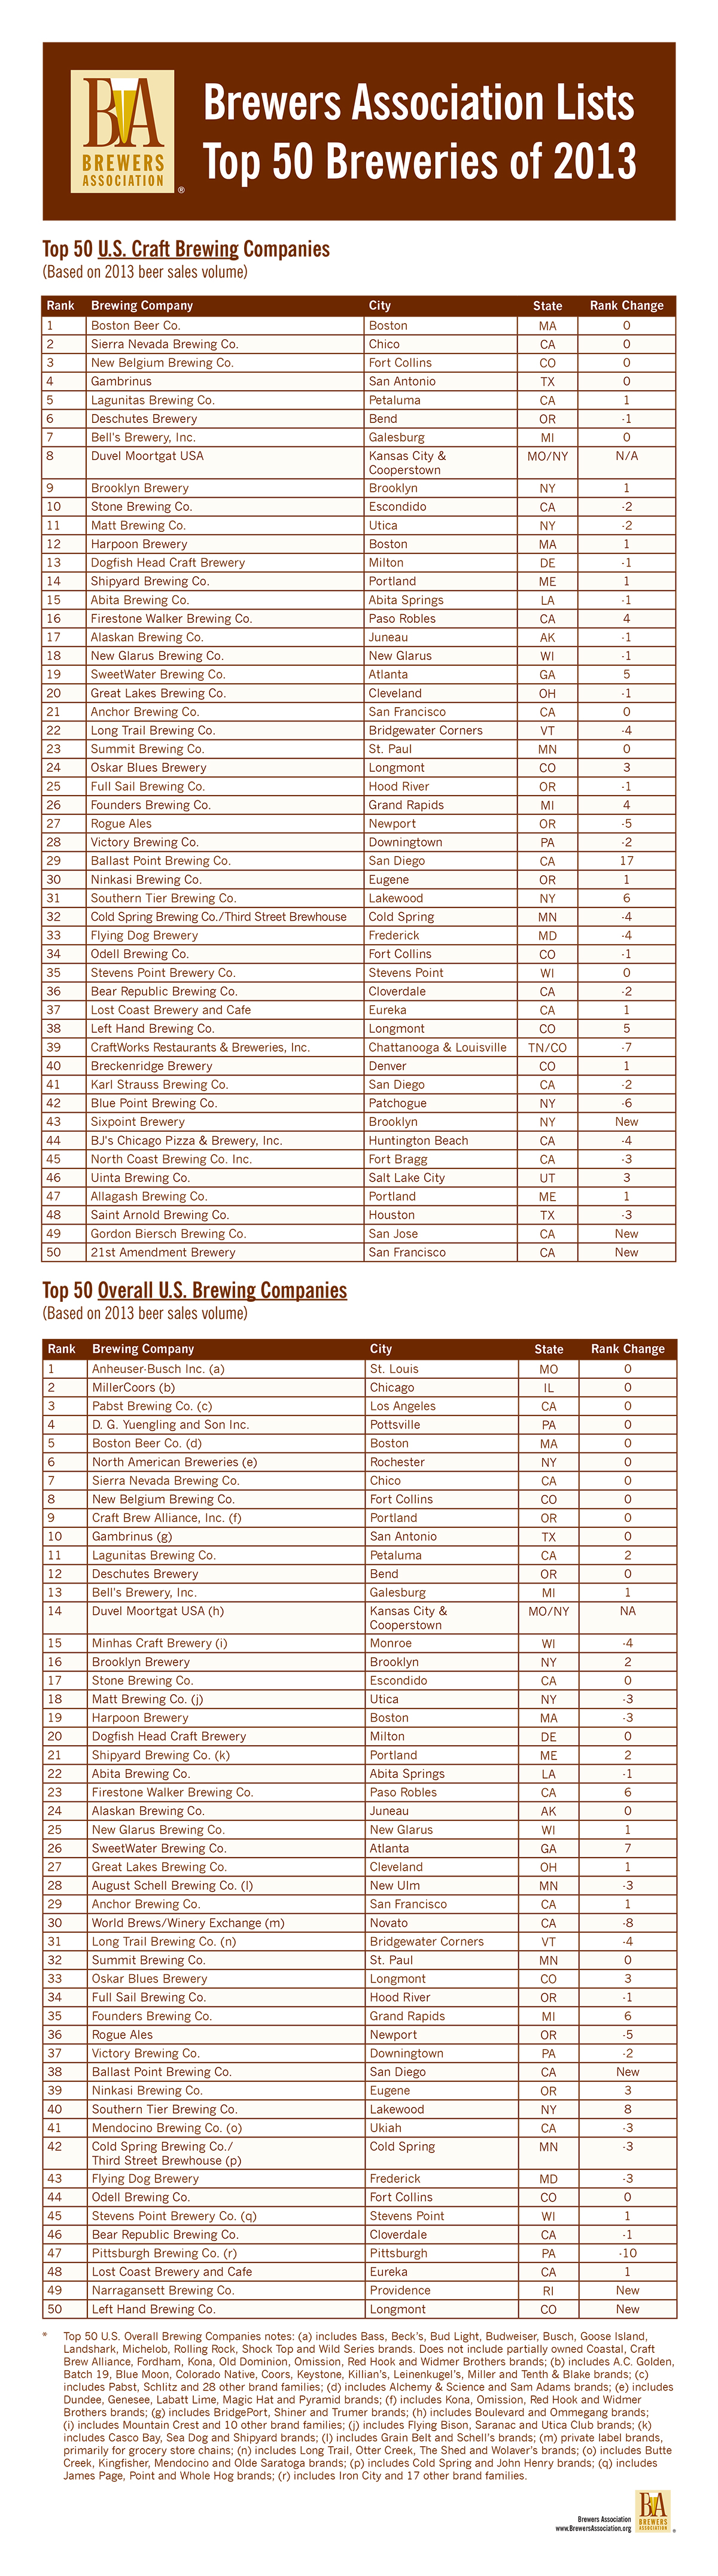 2014 Top 50 Breweries